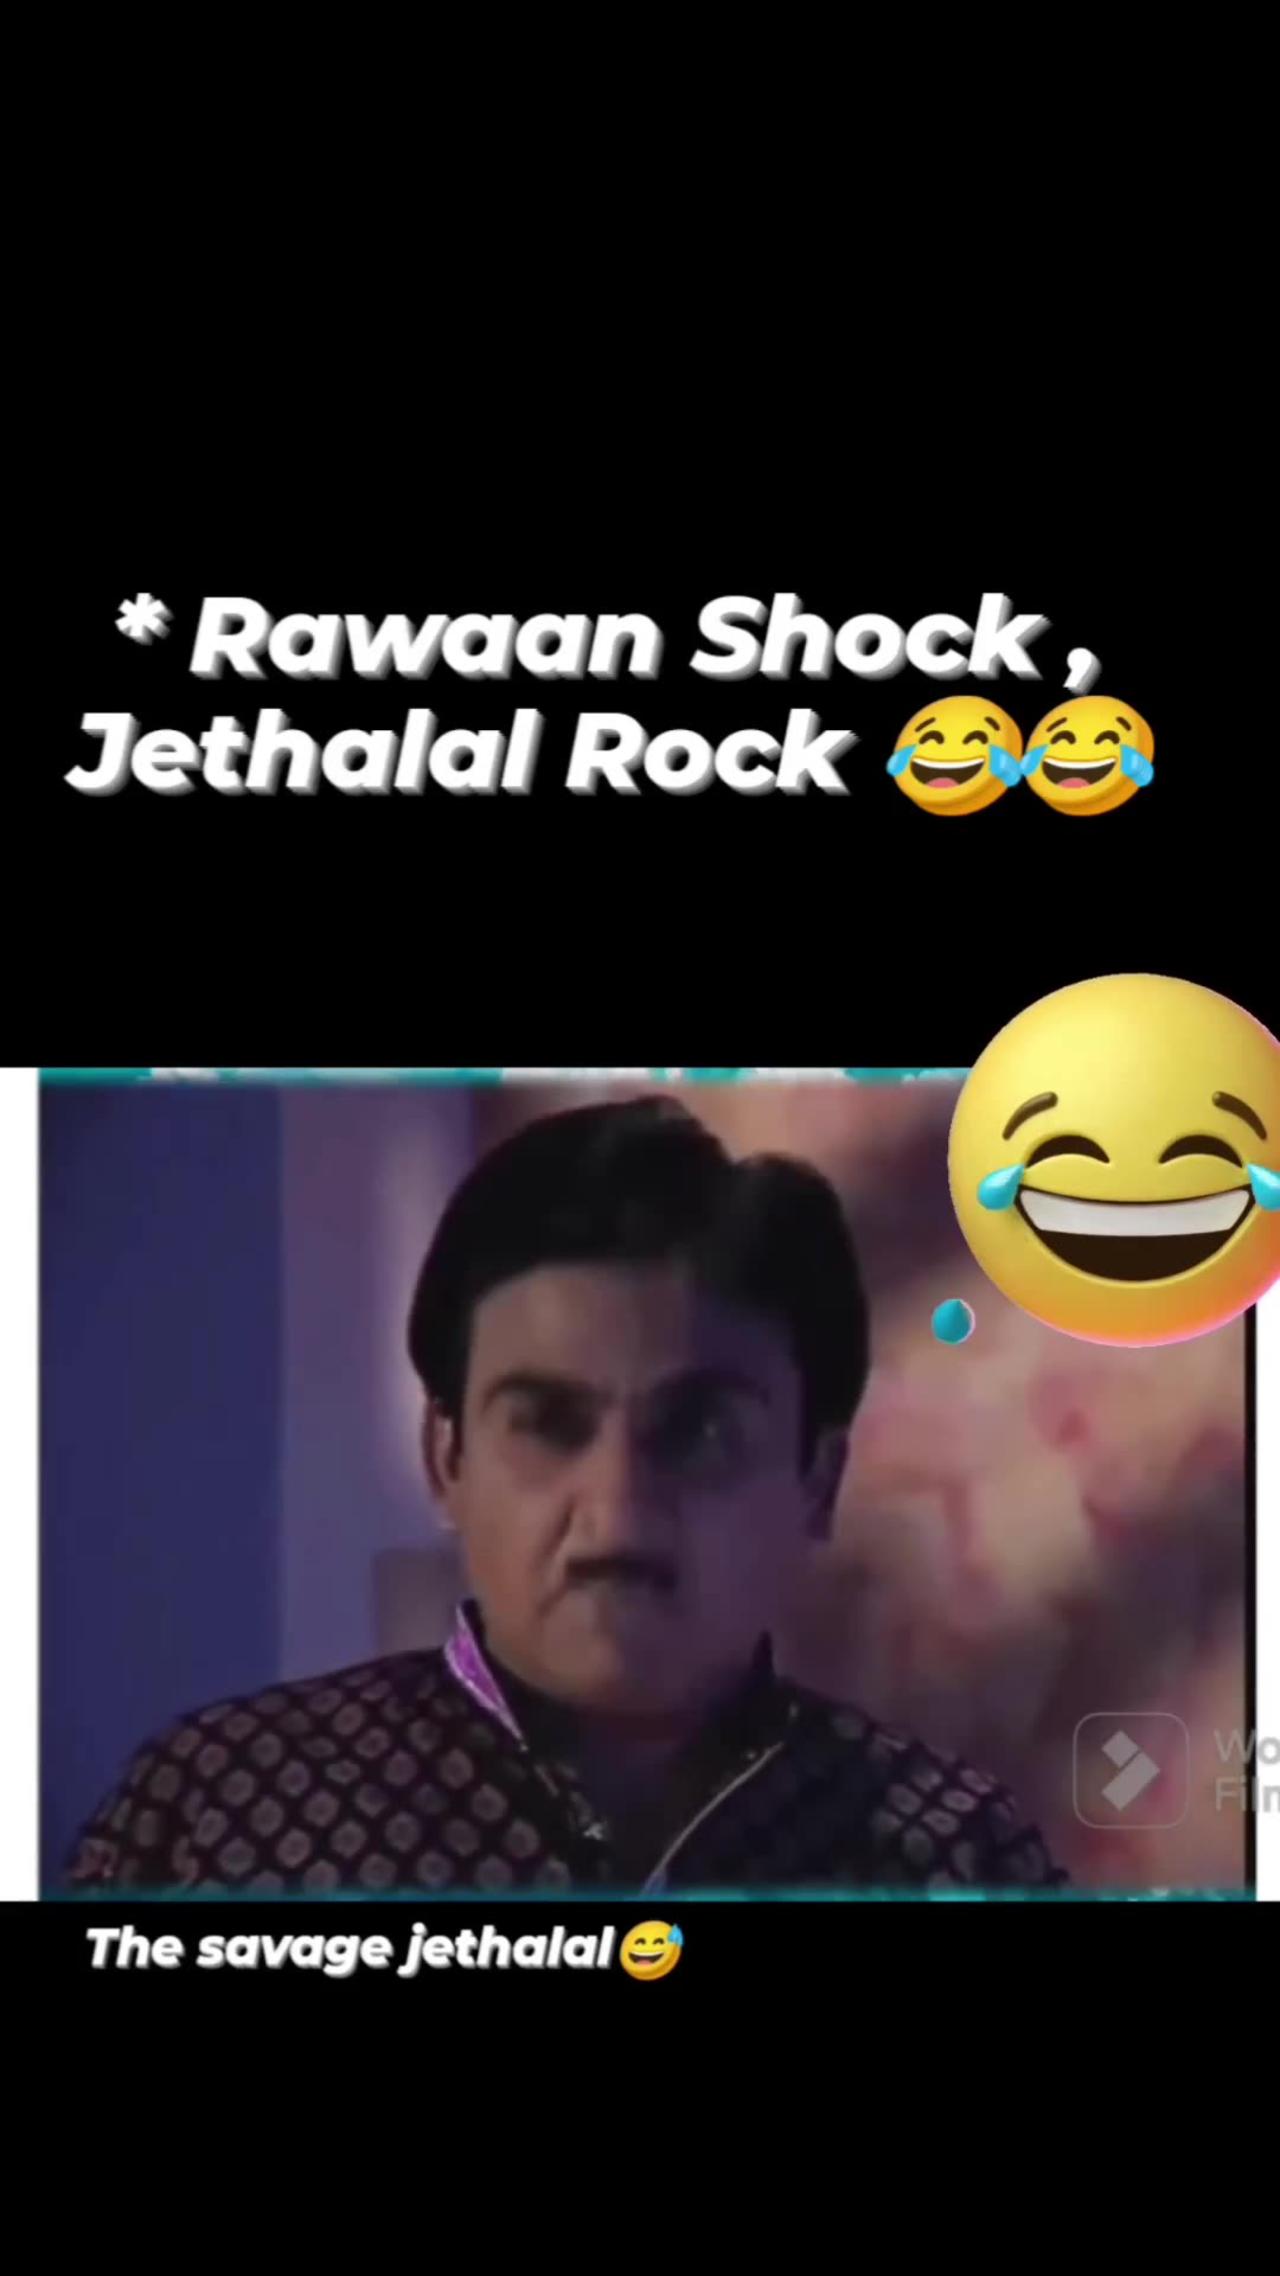 Jethalal Rocks :) Ravan shoks !!